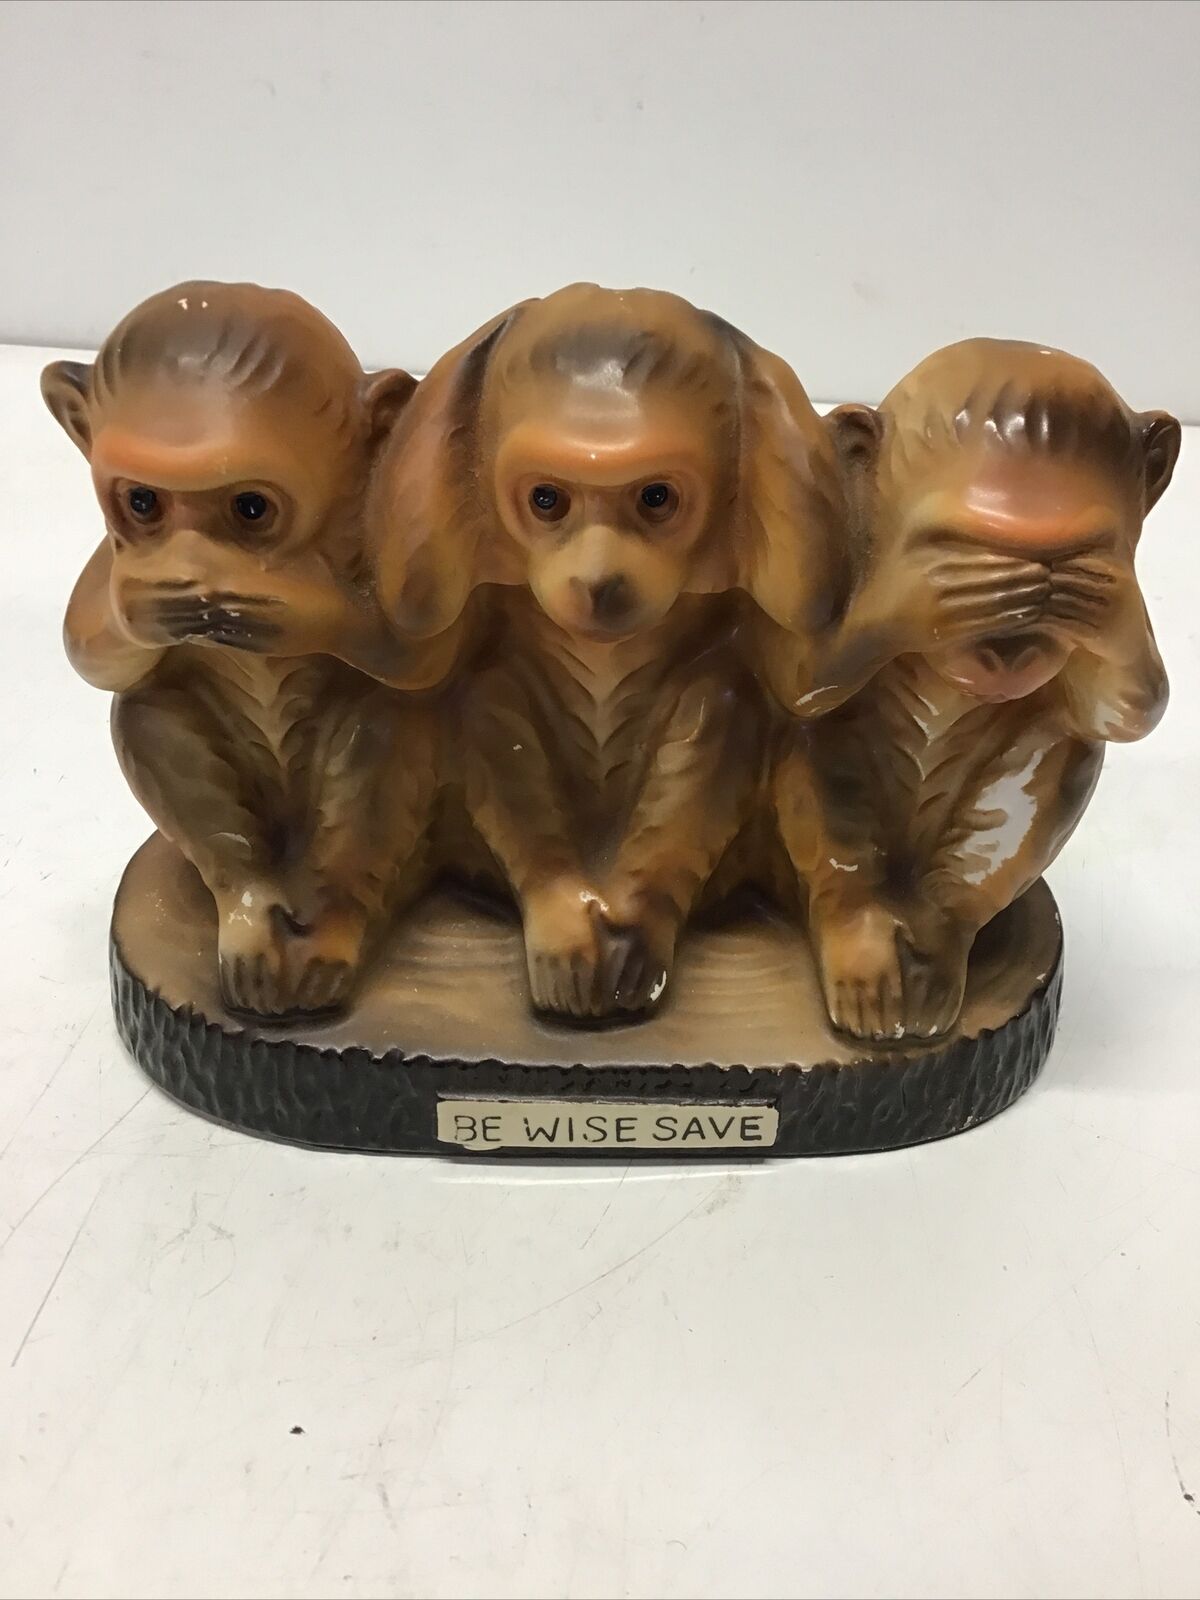 Vintage Older 3 Monkeys Speak,See,Hear No Evil Ceramic Bank -Be Wise Save- 25/94